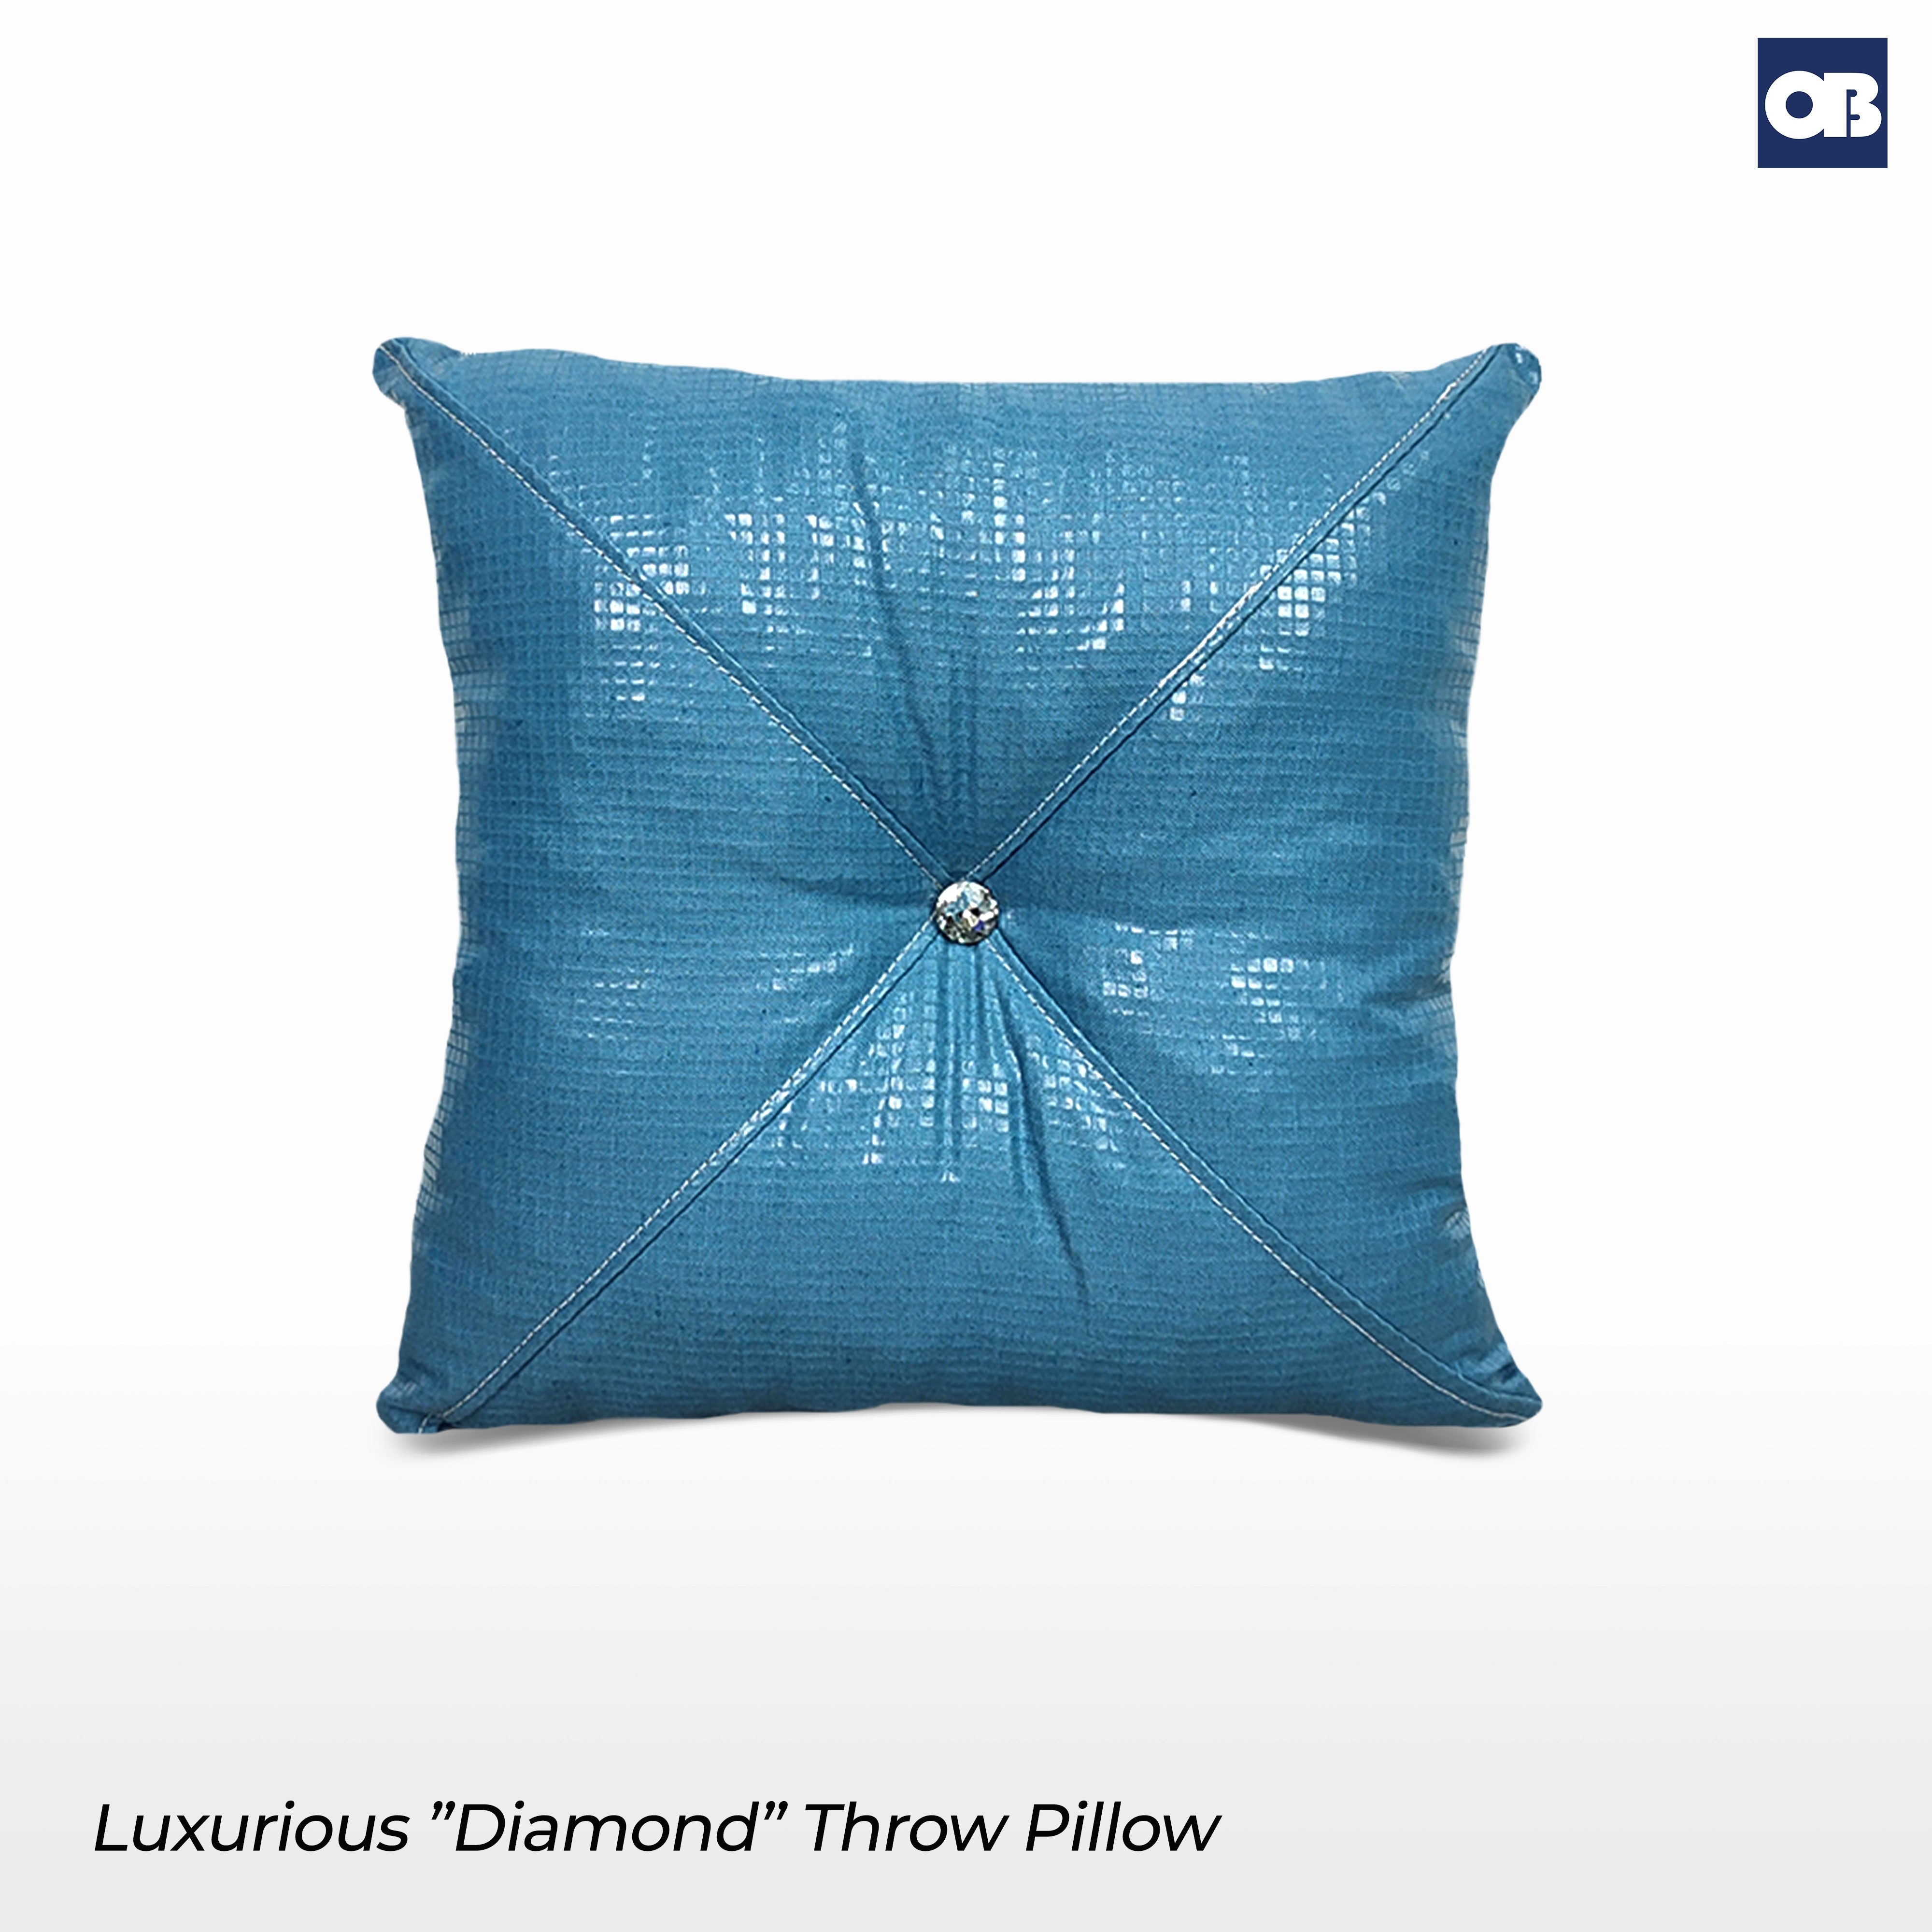 OB Luxurious Diamond Throw Pillow